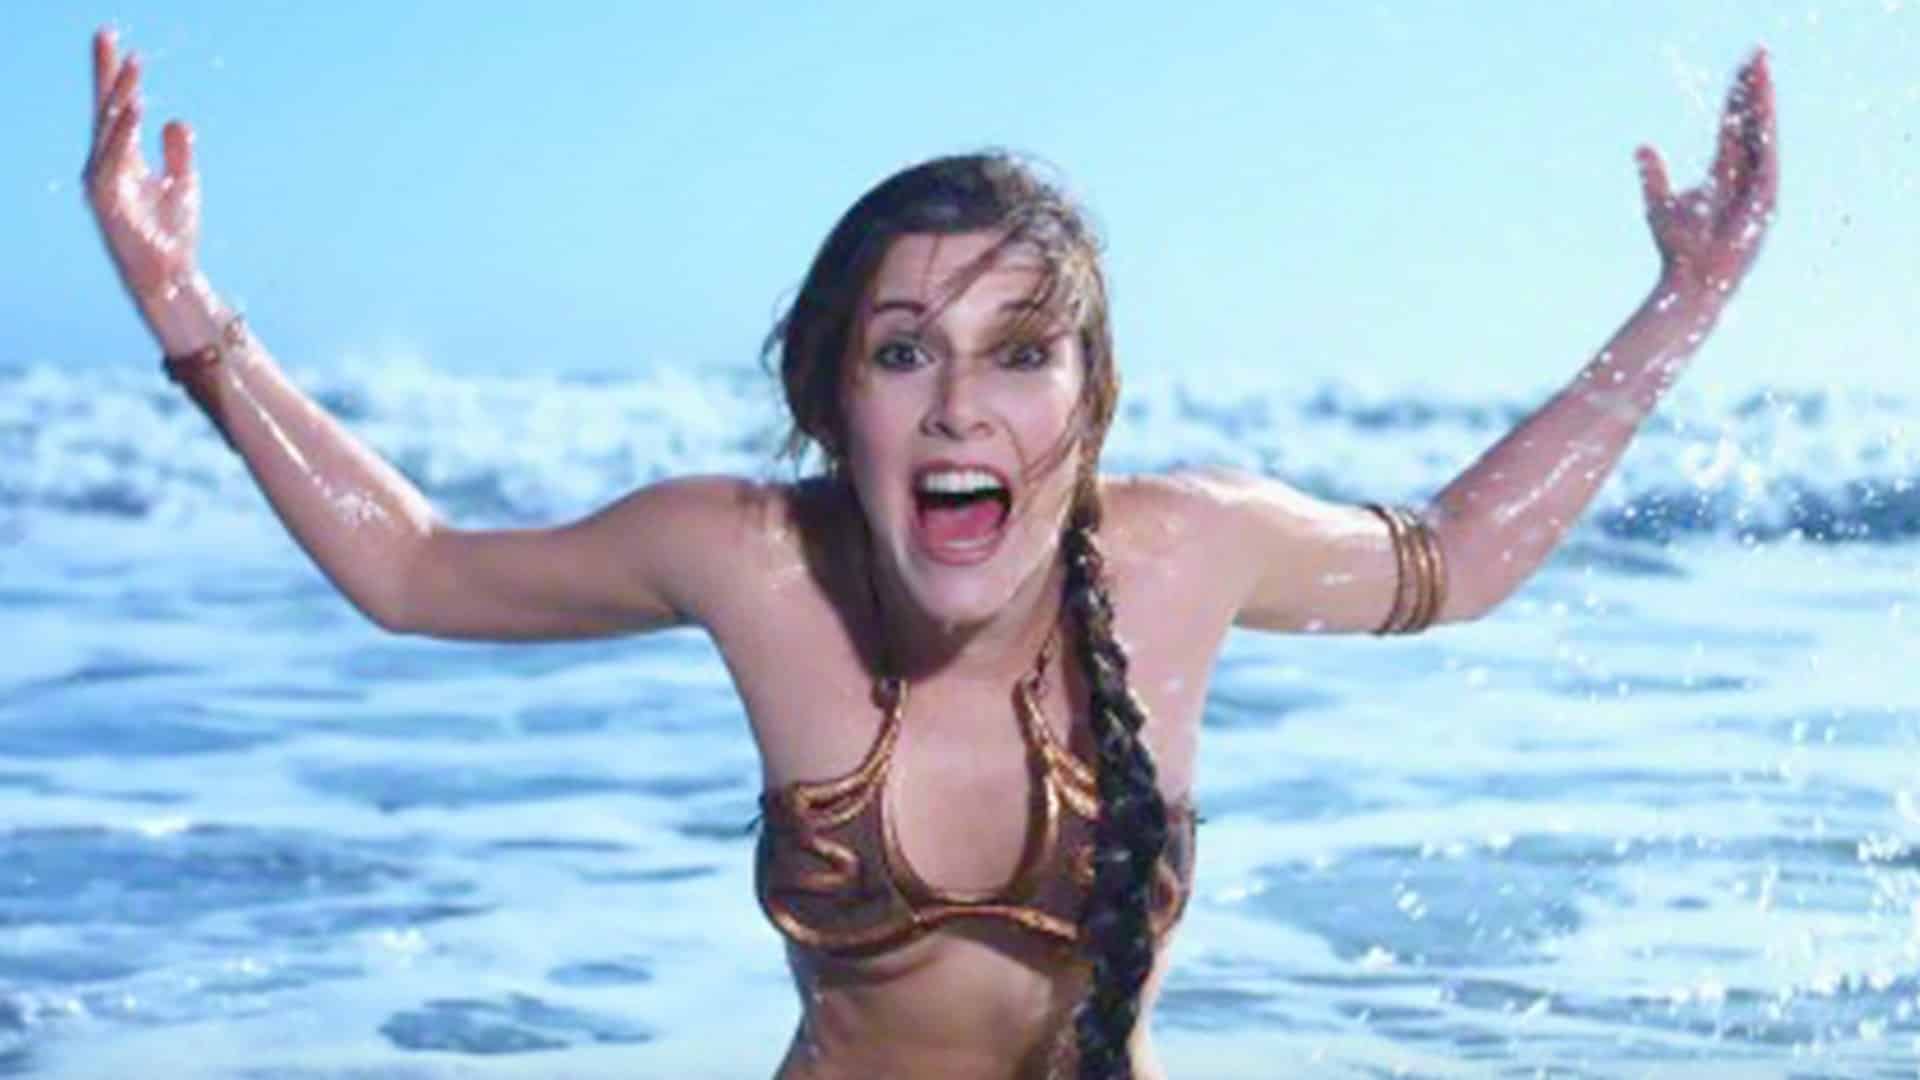 Princess Leia, the girl in the golden bikini